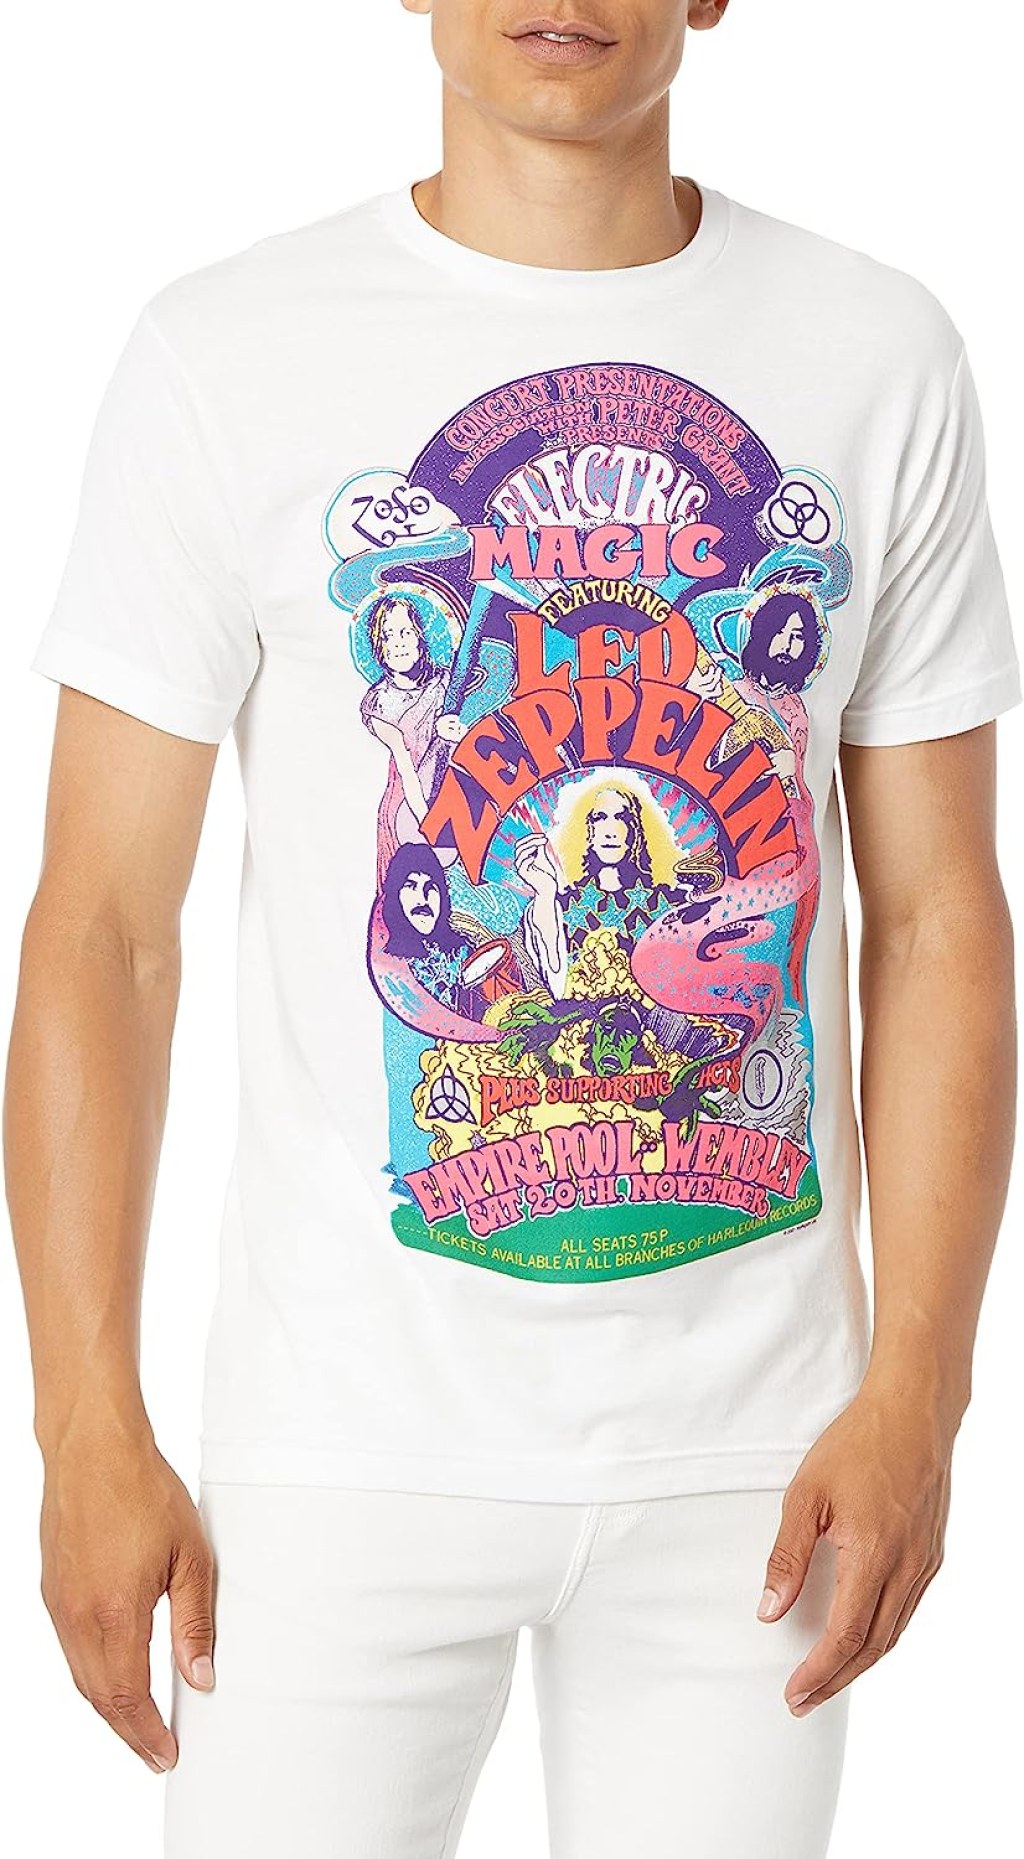 Picture of: Unbekannt Herren Led Zeppelin Electric Magic Tee Led Zeppelin Electric  Magic T-Shirt : Amazon